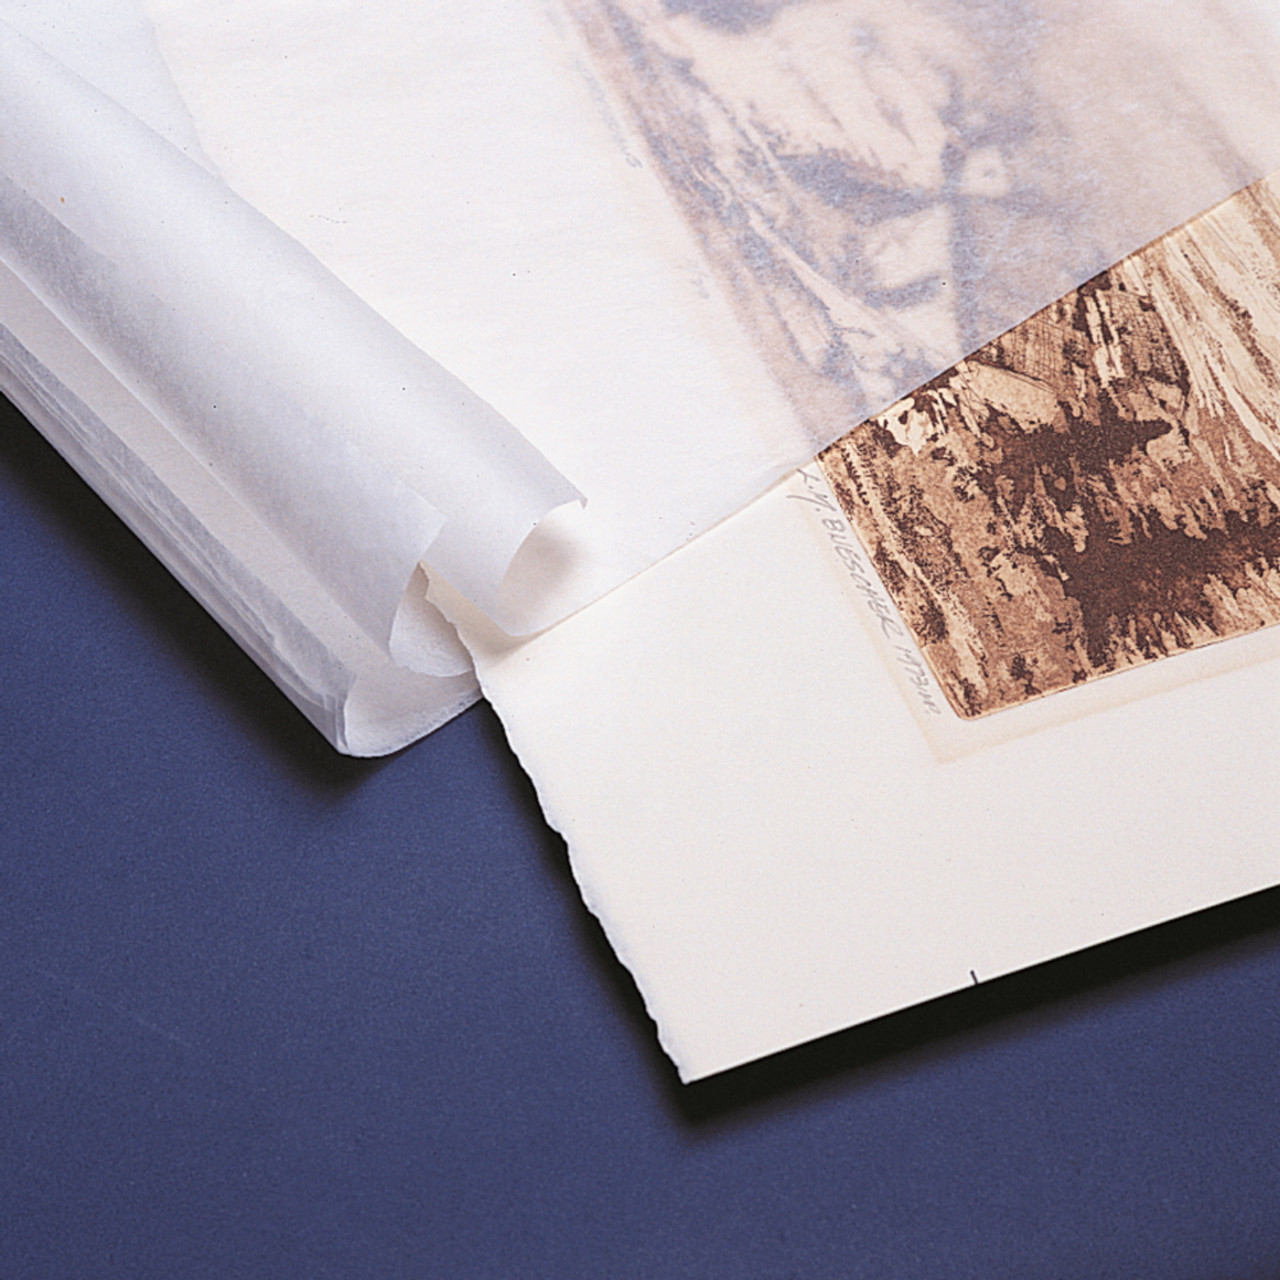 Archival Storage - Tissue Paper